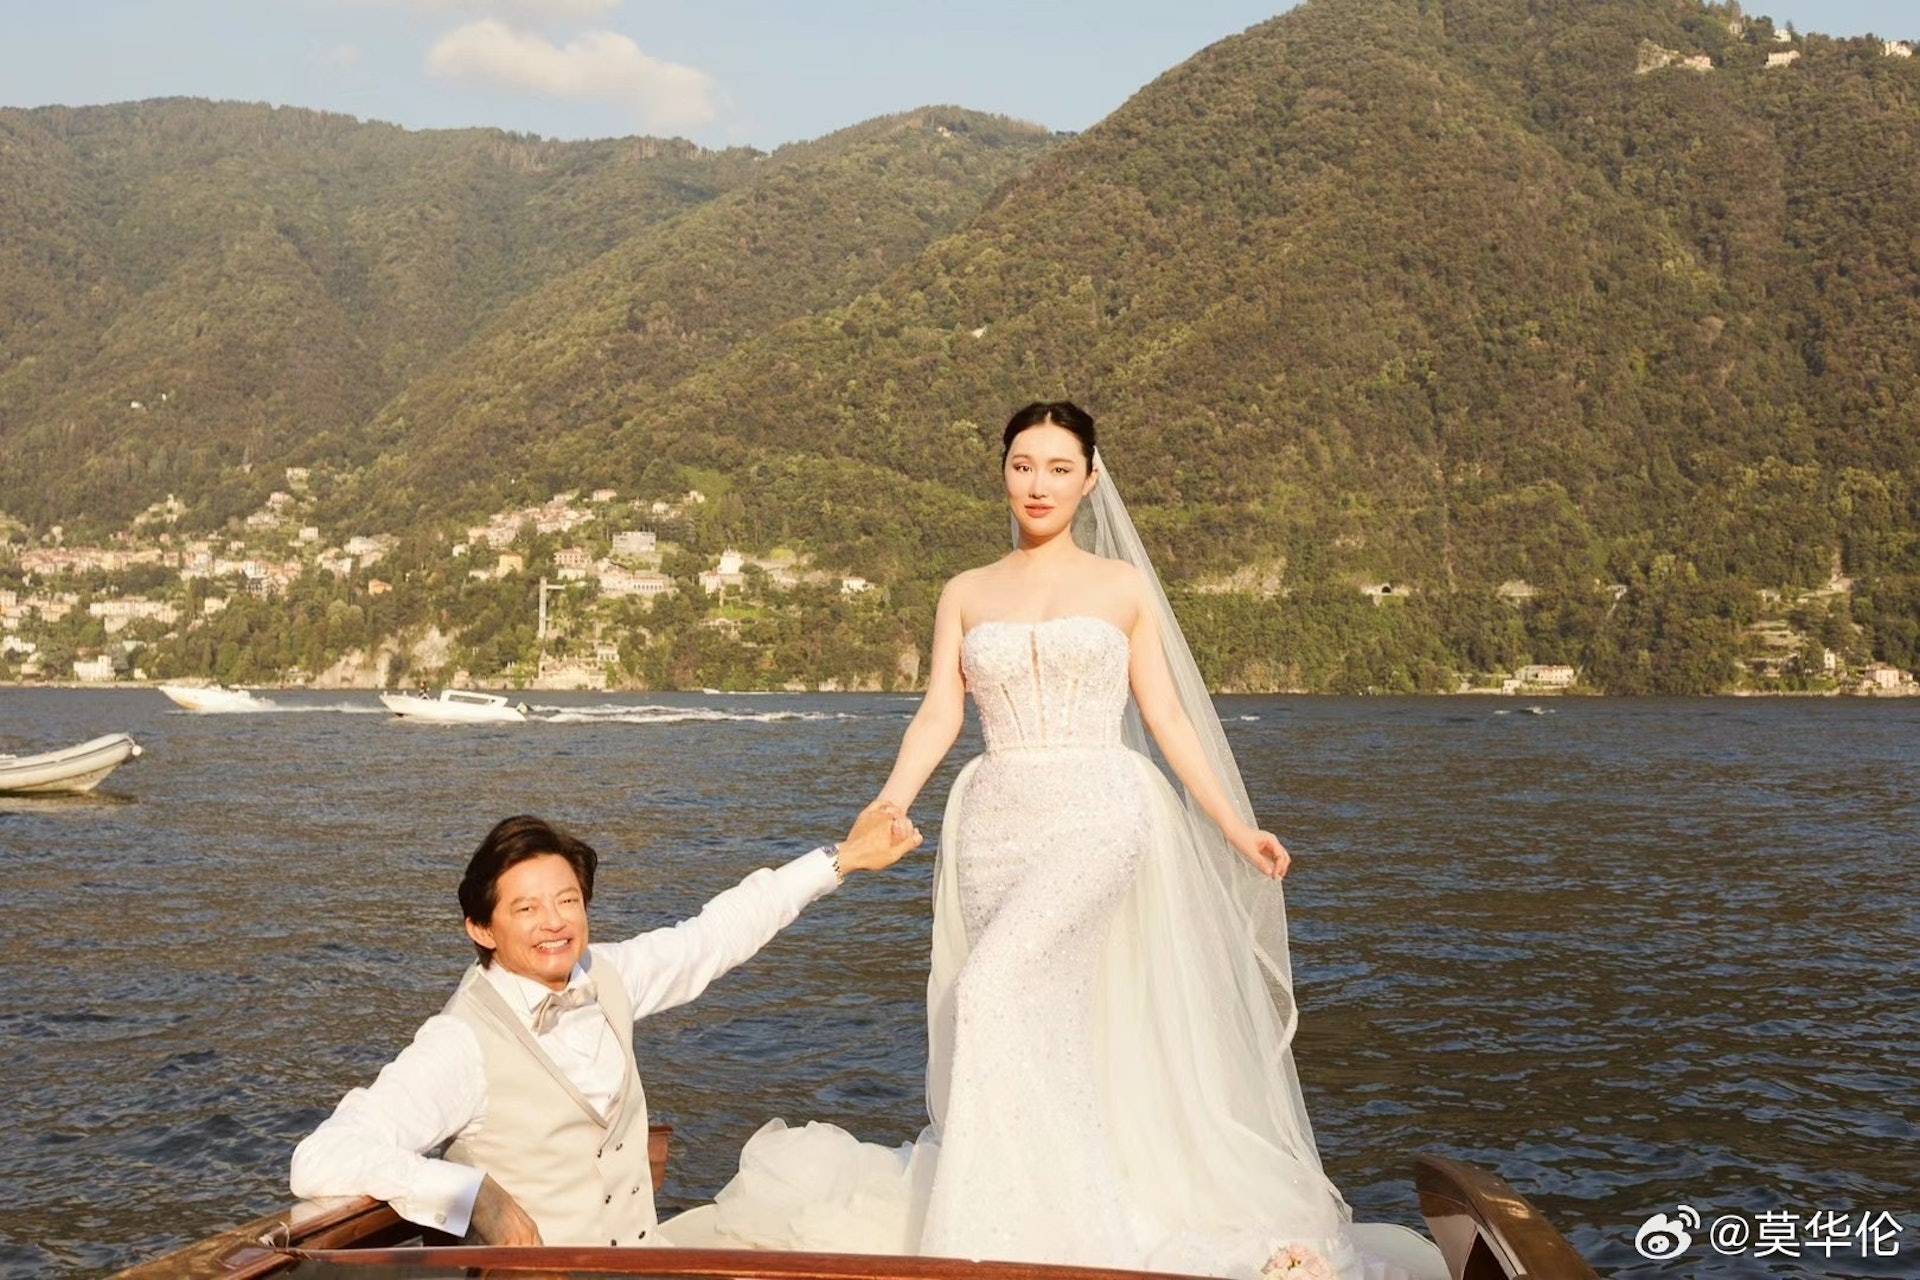 莫華倫 嫩妻 莫華倫 太太 王冰冰 莫華倫 二人的婚禮在意大利的科莫湖舉行